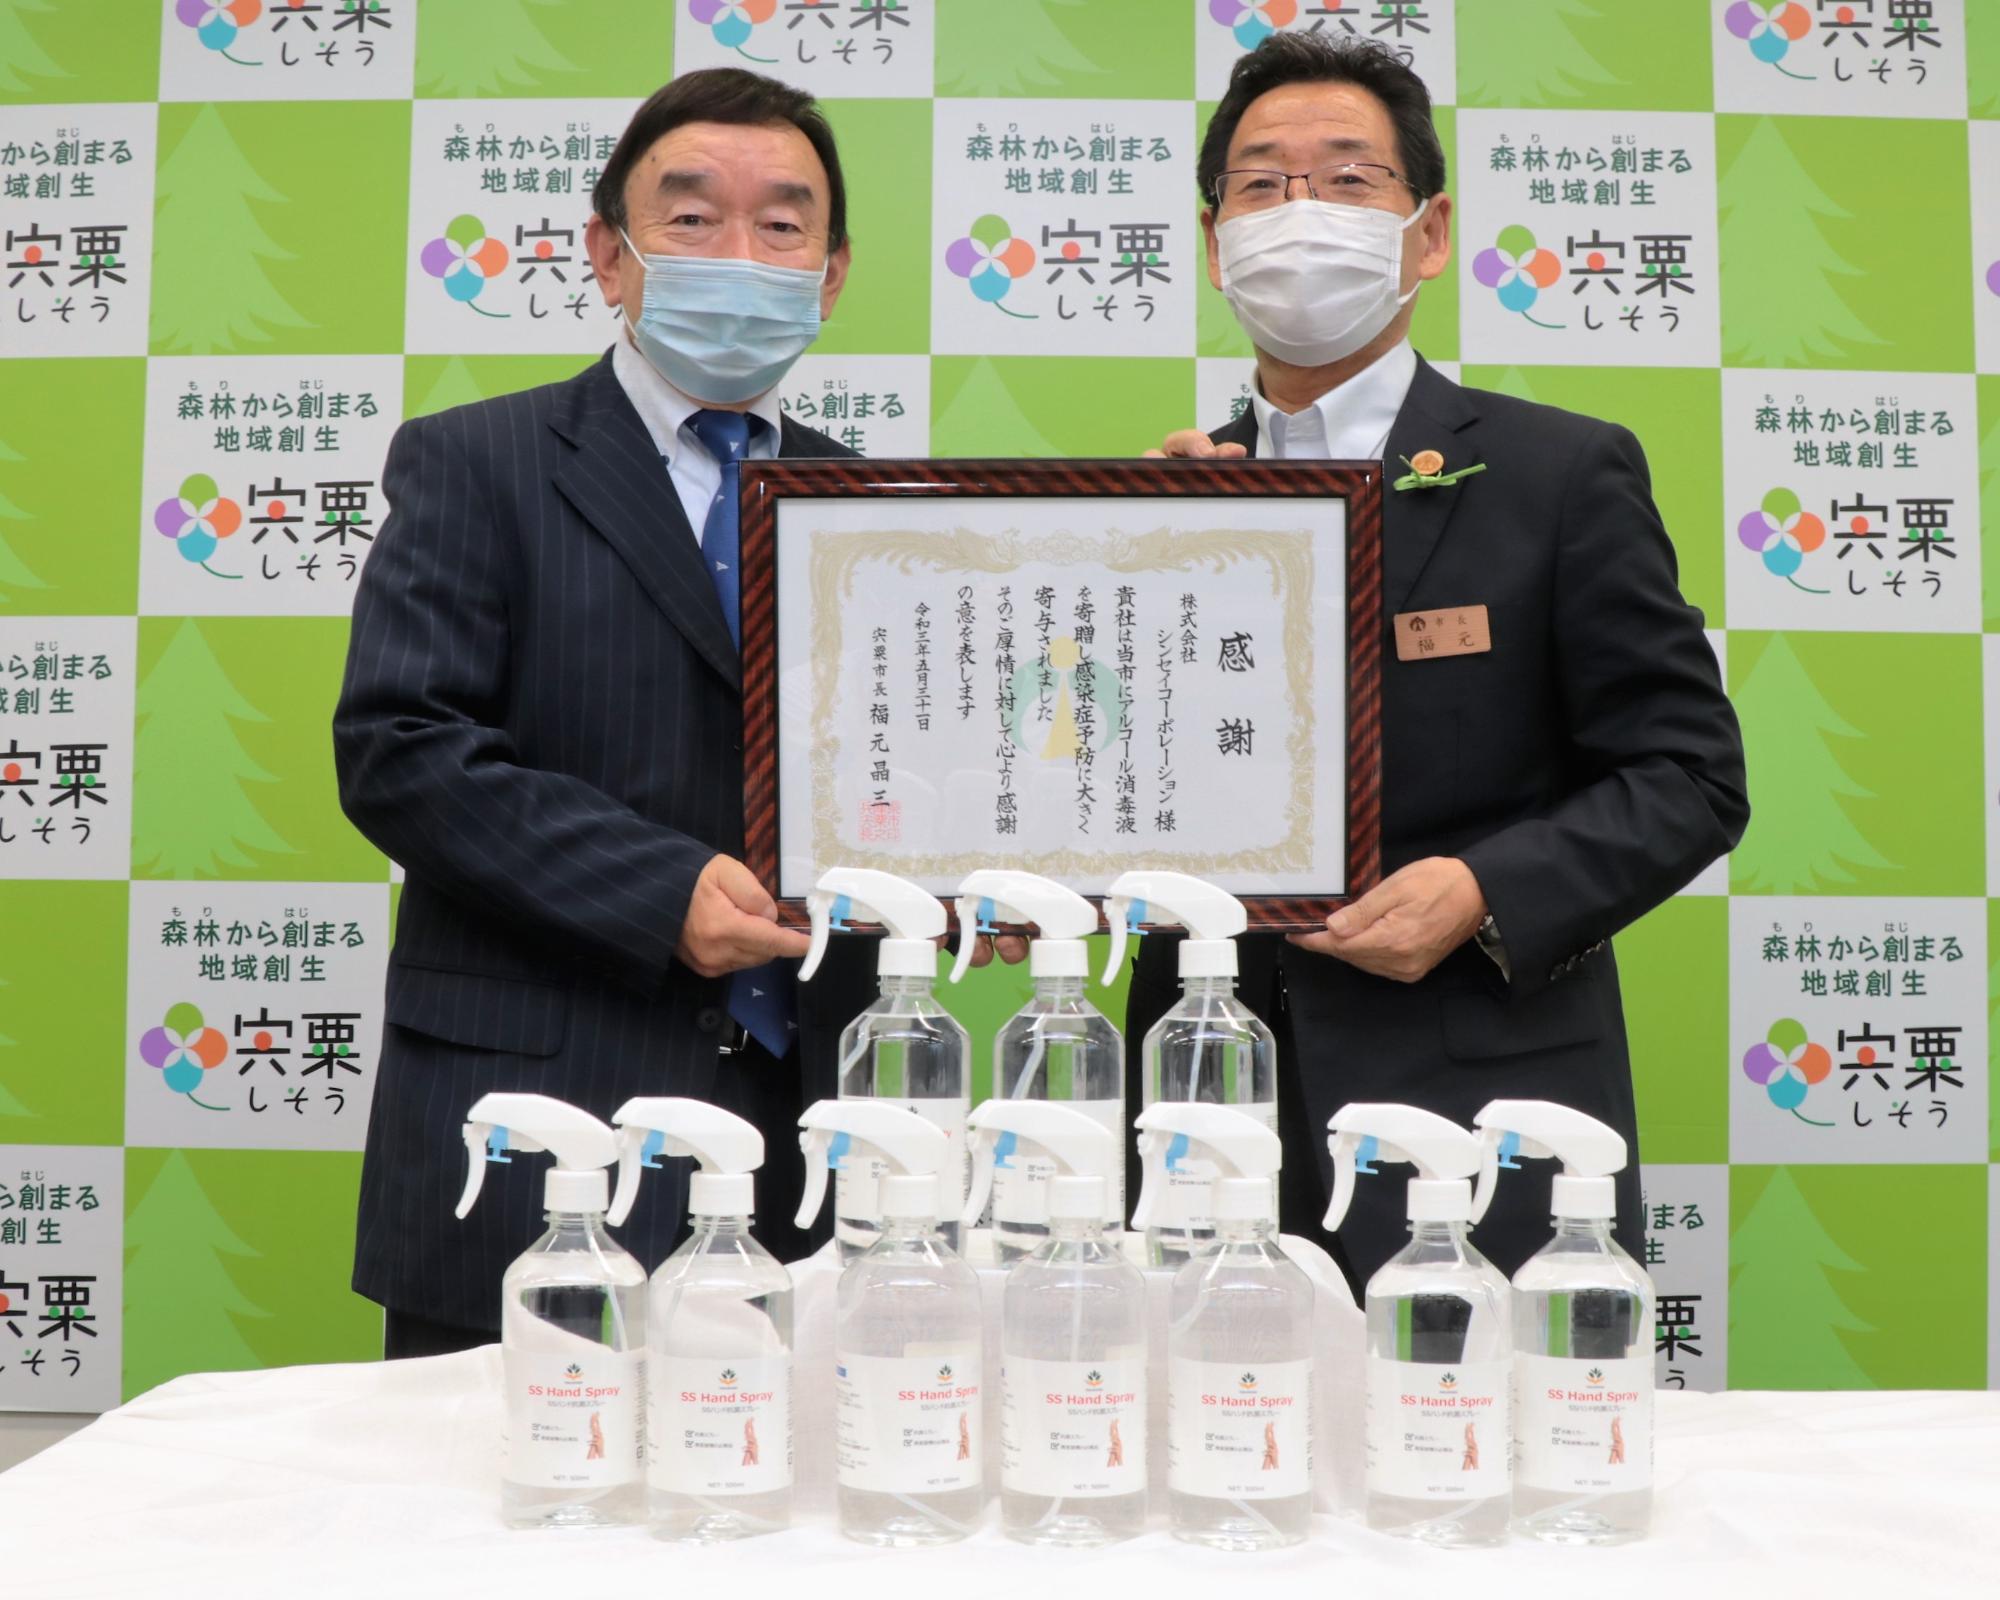 株式会社シンセイコーポレーション代表取締役会長の大東敏郎氏と福元市長の二人が感謝状に手を添え並んで笑っている写真